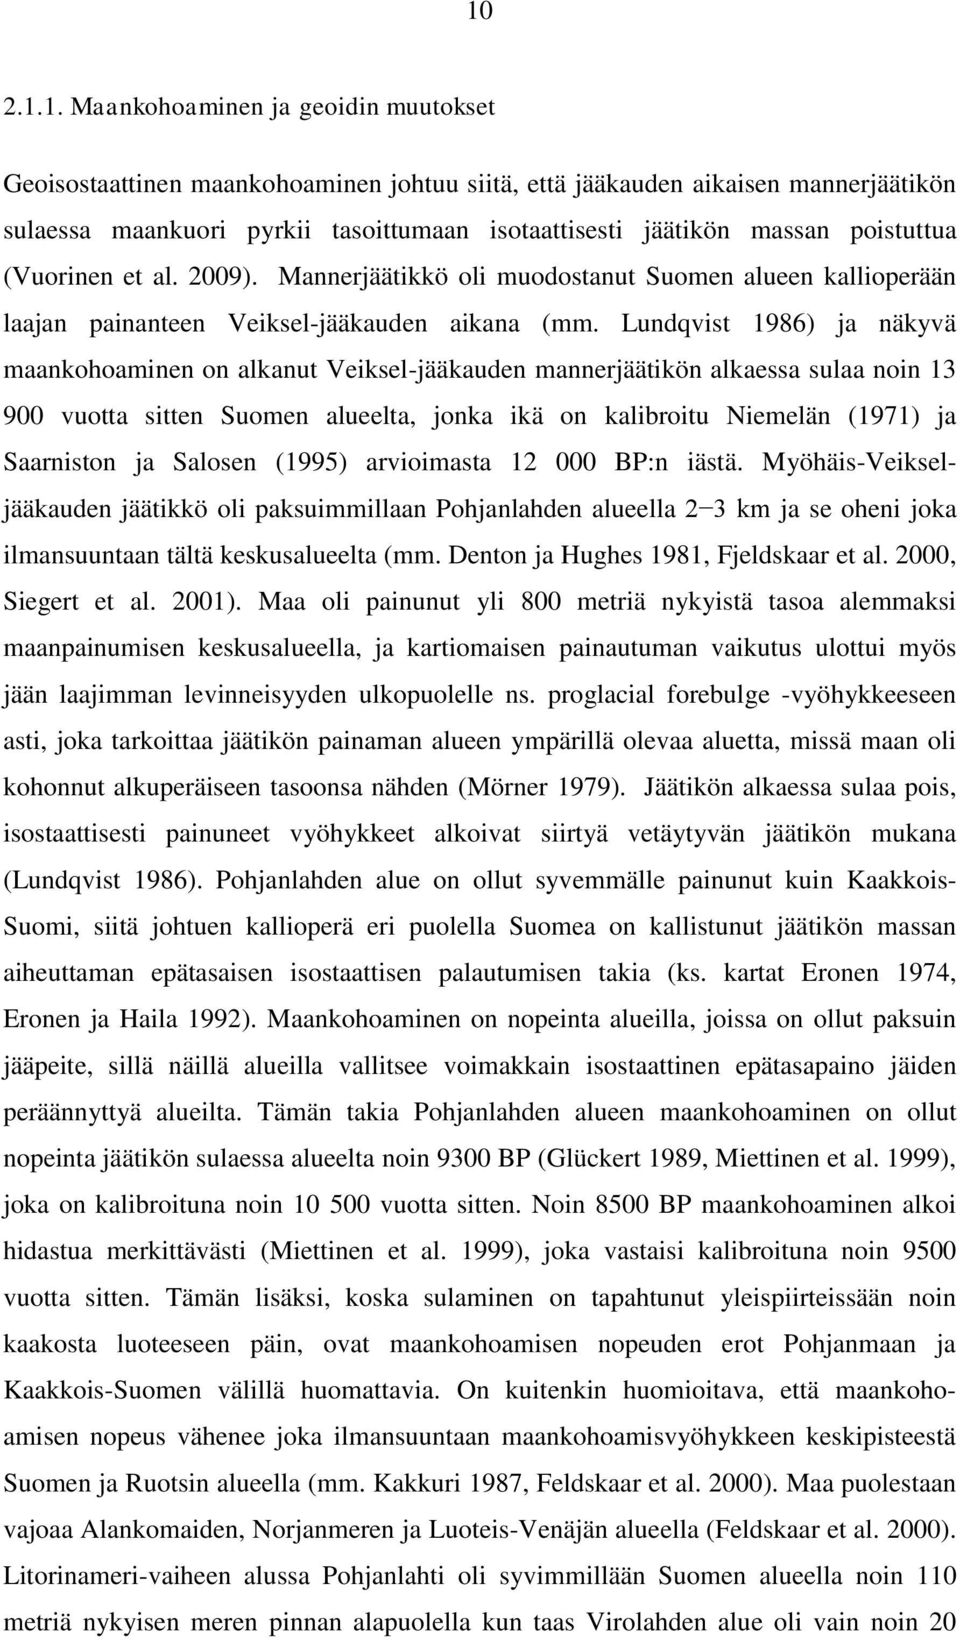 Lundqvist 1986) ja näkyvä maankohoaminen on alkanut Veiksel-jääkauden mannerjäätikön alkaessa sulaa noin 13 900 vuotta sitten Suomen alueelta, jonka ikä on kalibroitu Niemelän (1971) ja Saarniston ja